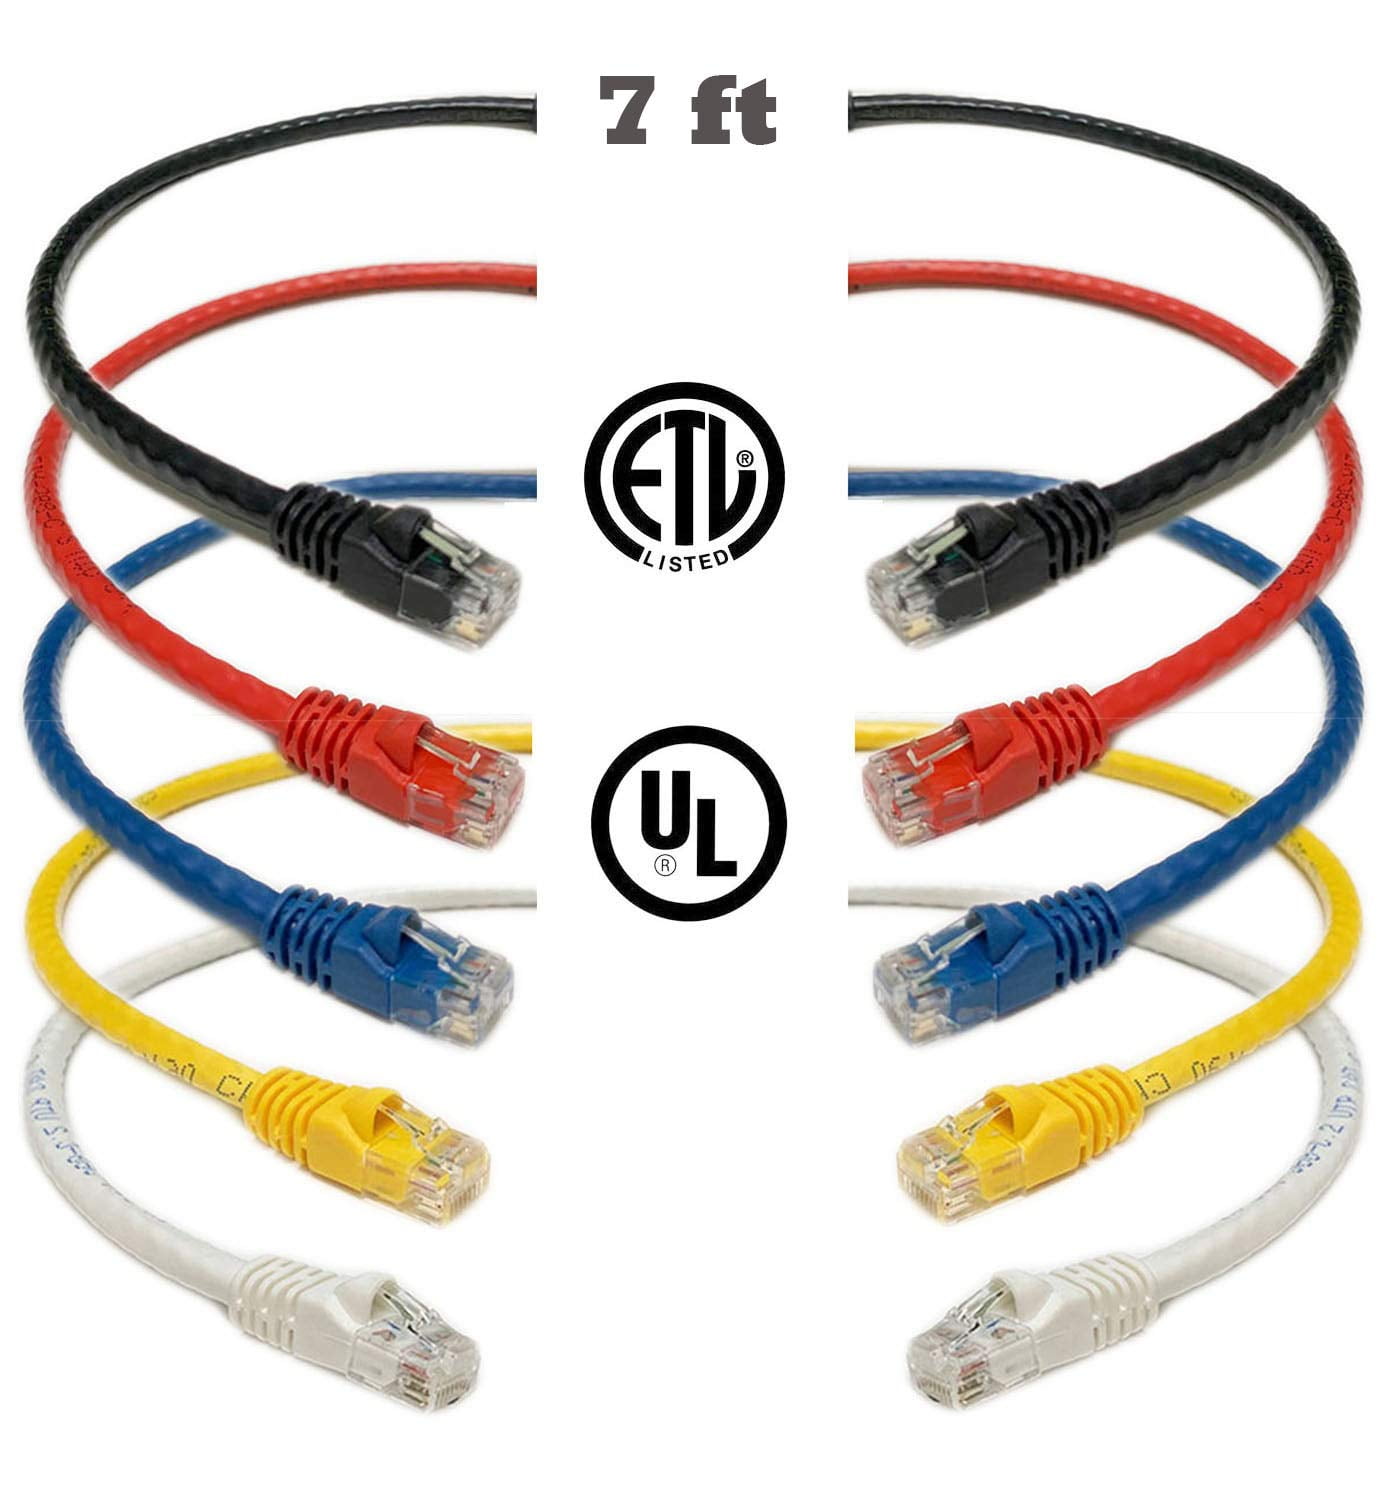 3M RJ45 CAT6 Network Cable Ethernet Patch Gigabit Cat 6 Lead UTP CCA Lot 1M 